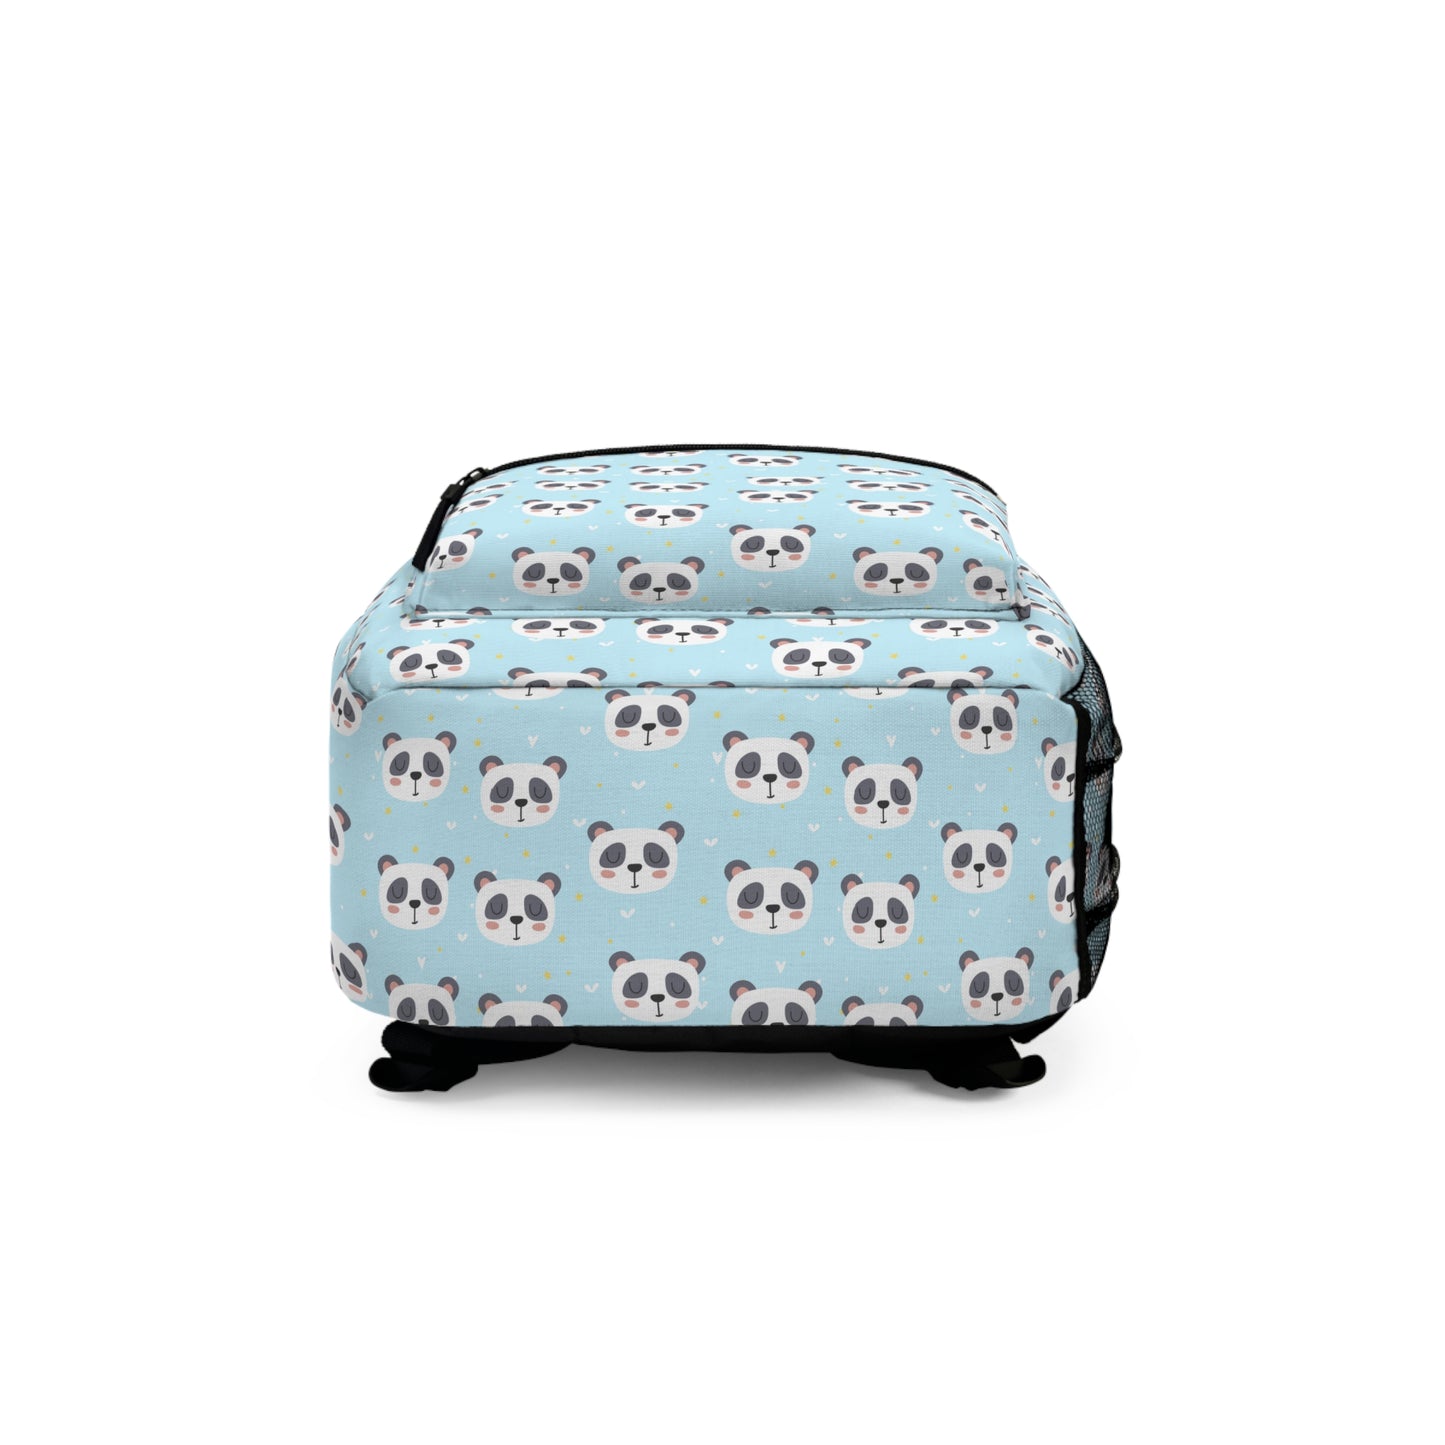 Panda Backpack, Girl's Blue Bookbag